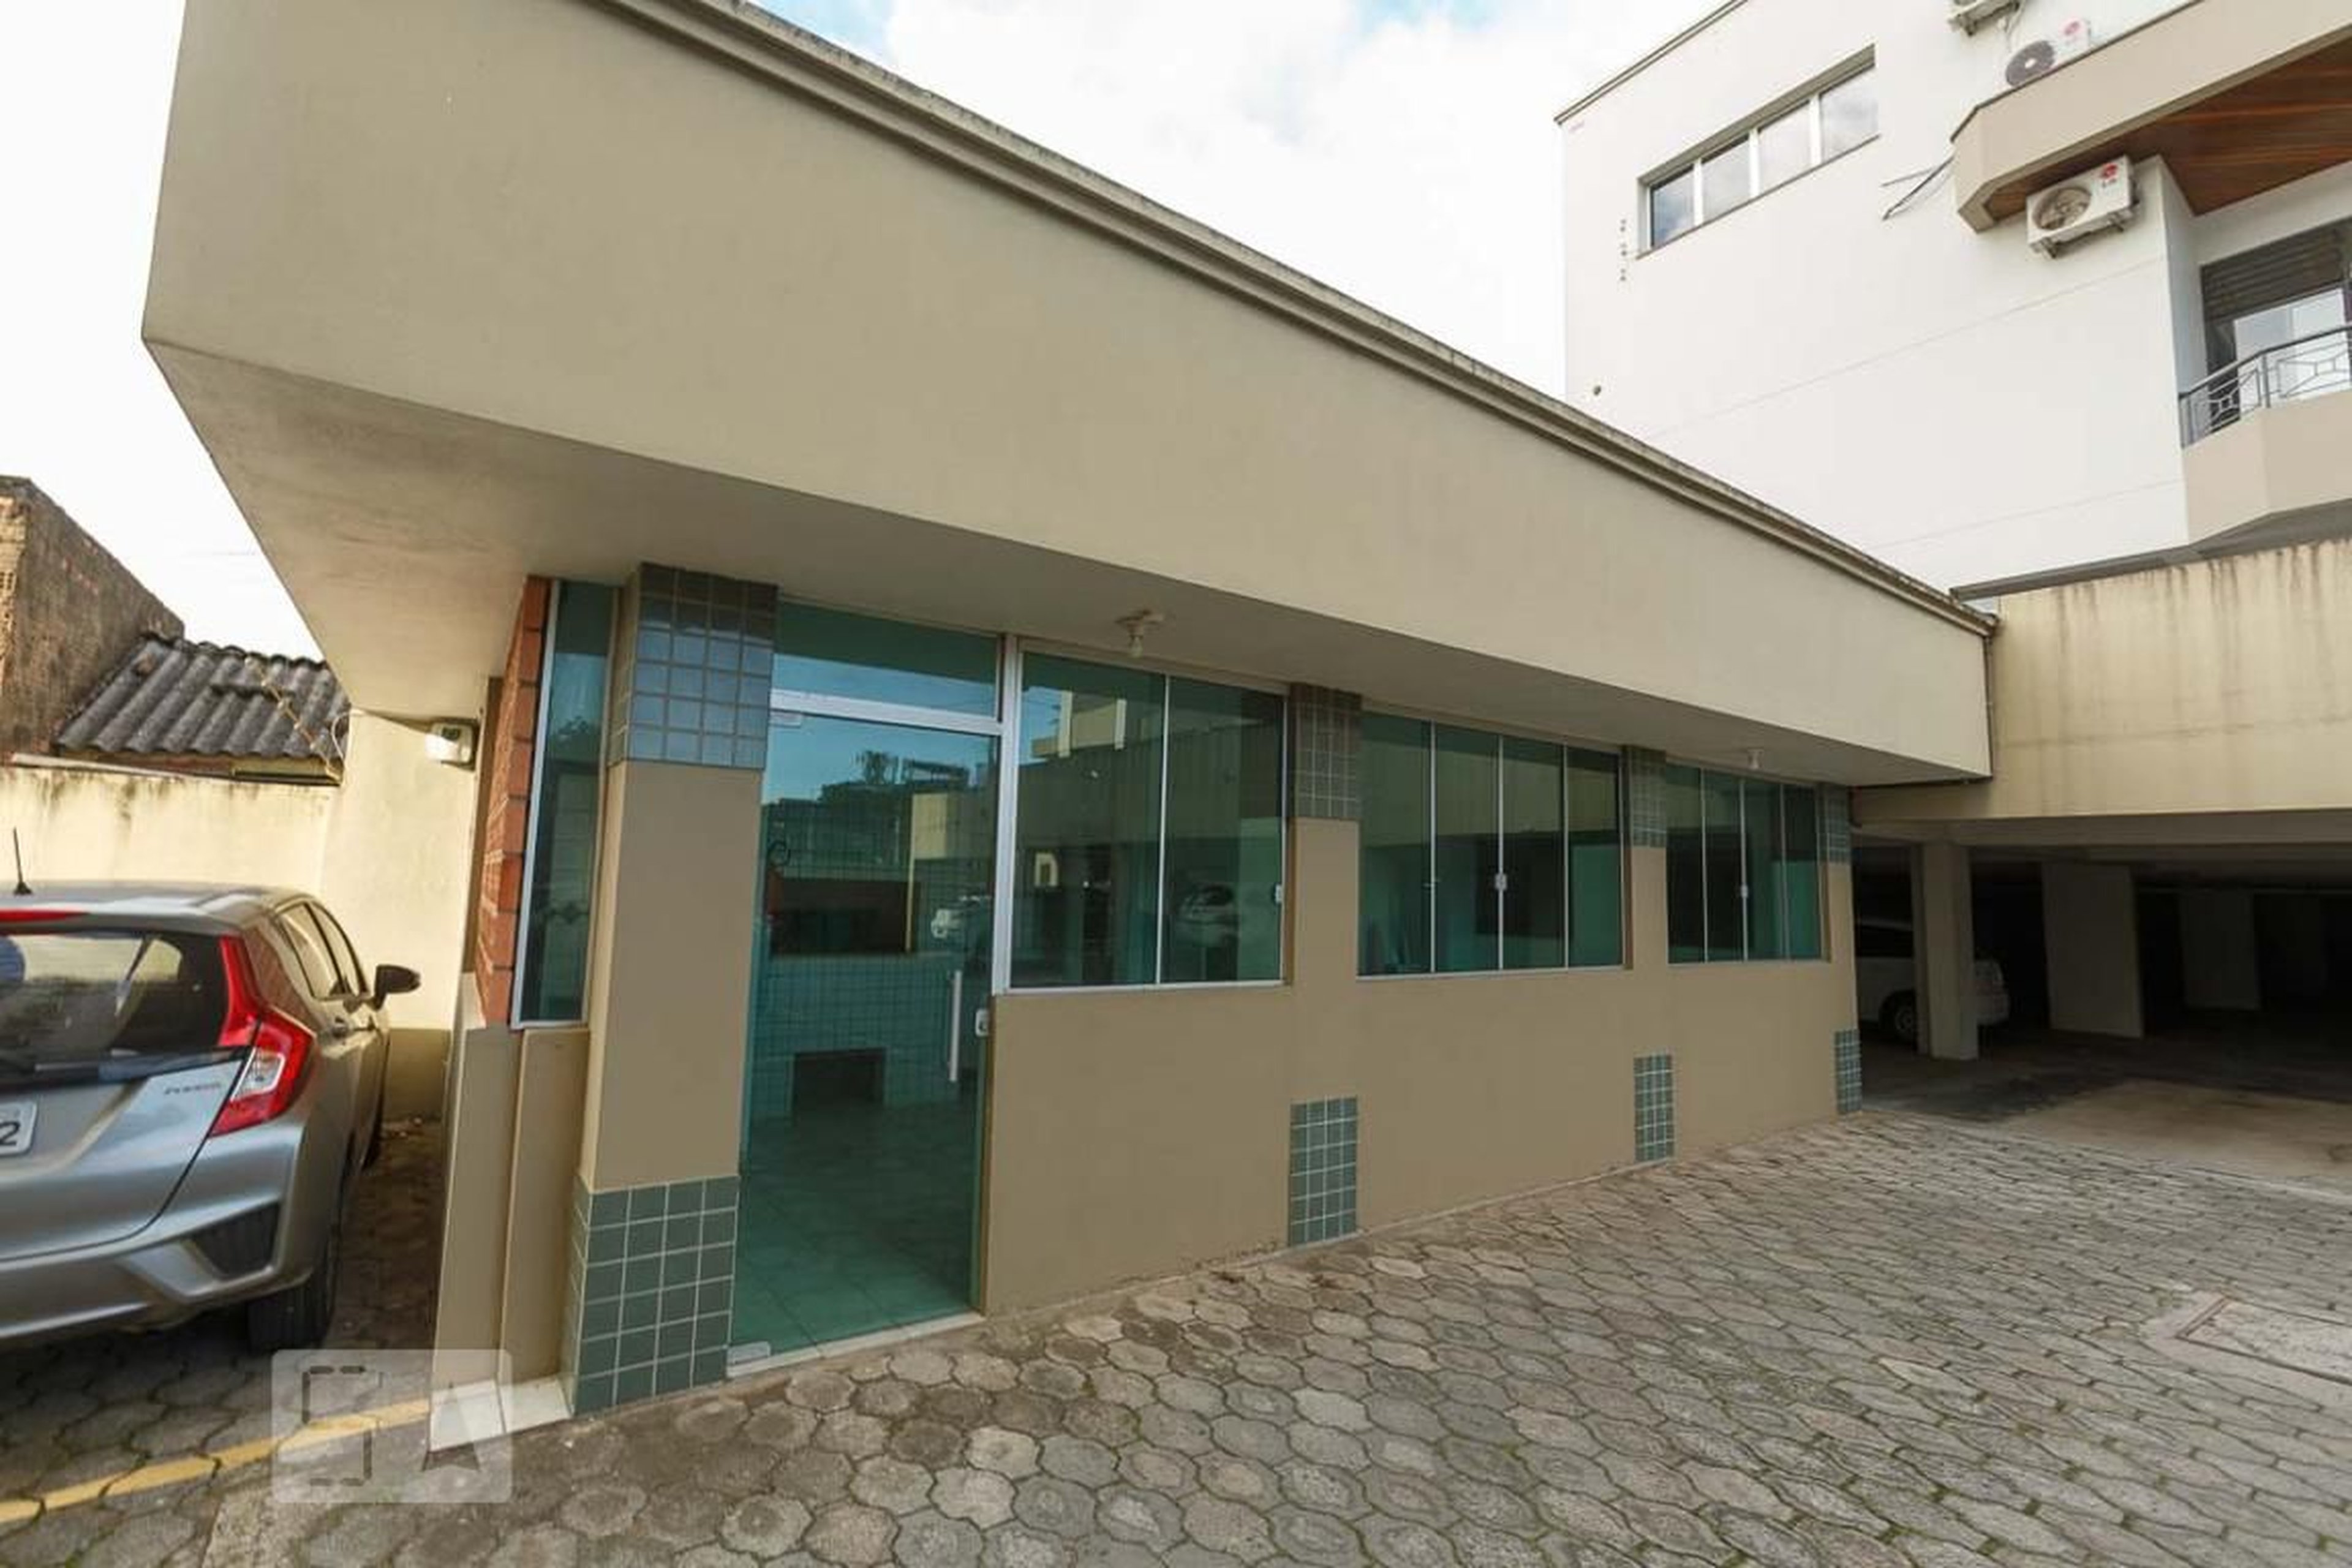 Área comum - Salão de festas 1 - Residencial Jardim das Palmeiras